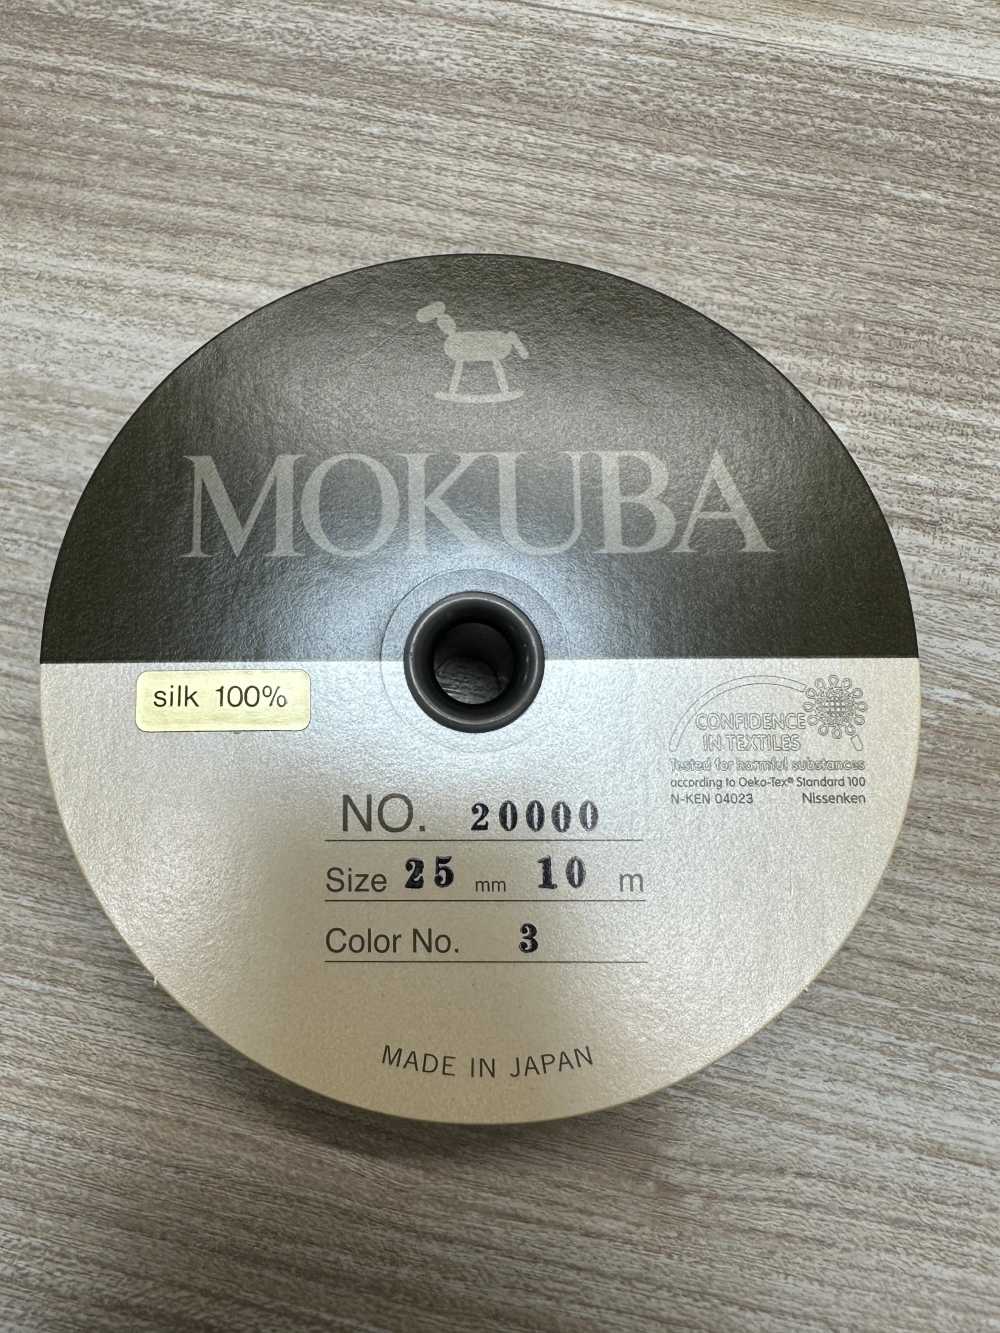 20000 MOKUBA真絲羅緞帶[特價][緞帶/絲帶帶繩子] Mokuba